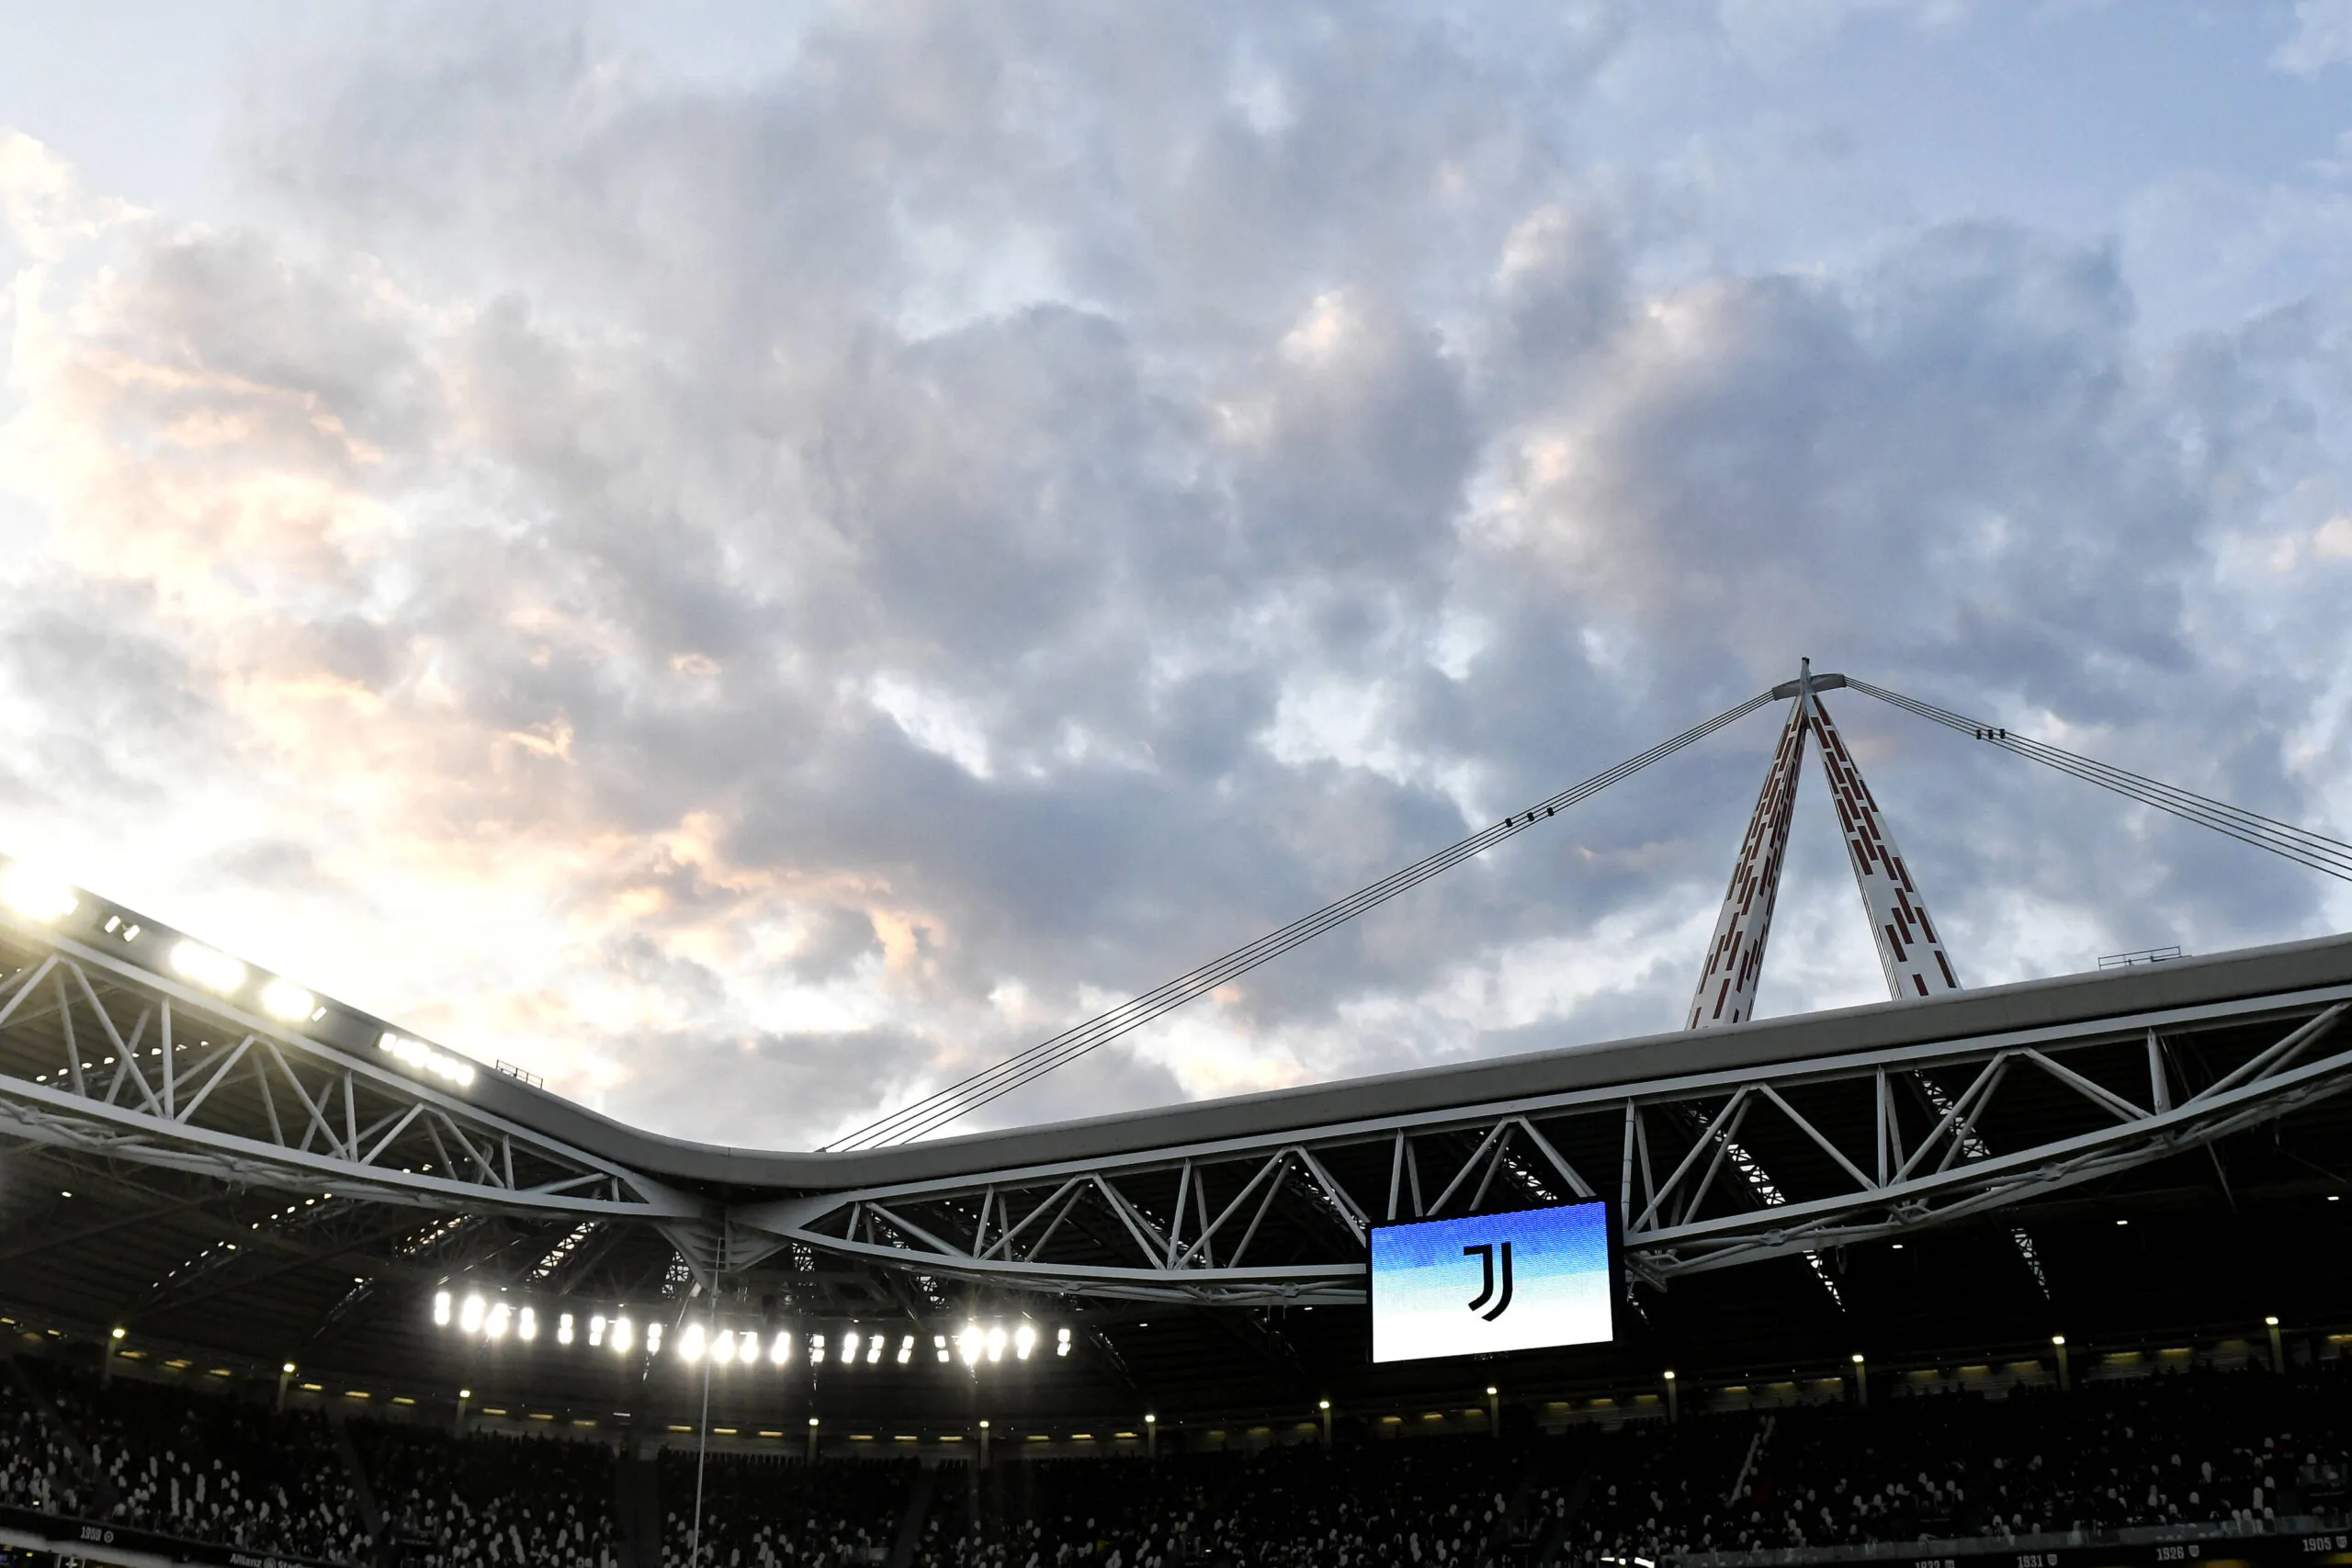 Frasi razziste: la ricostruzione e la posizione della Juventus